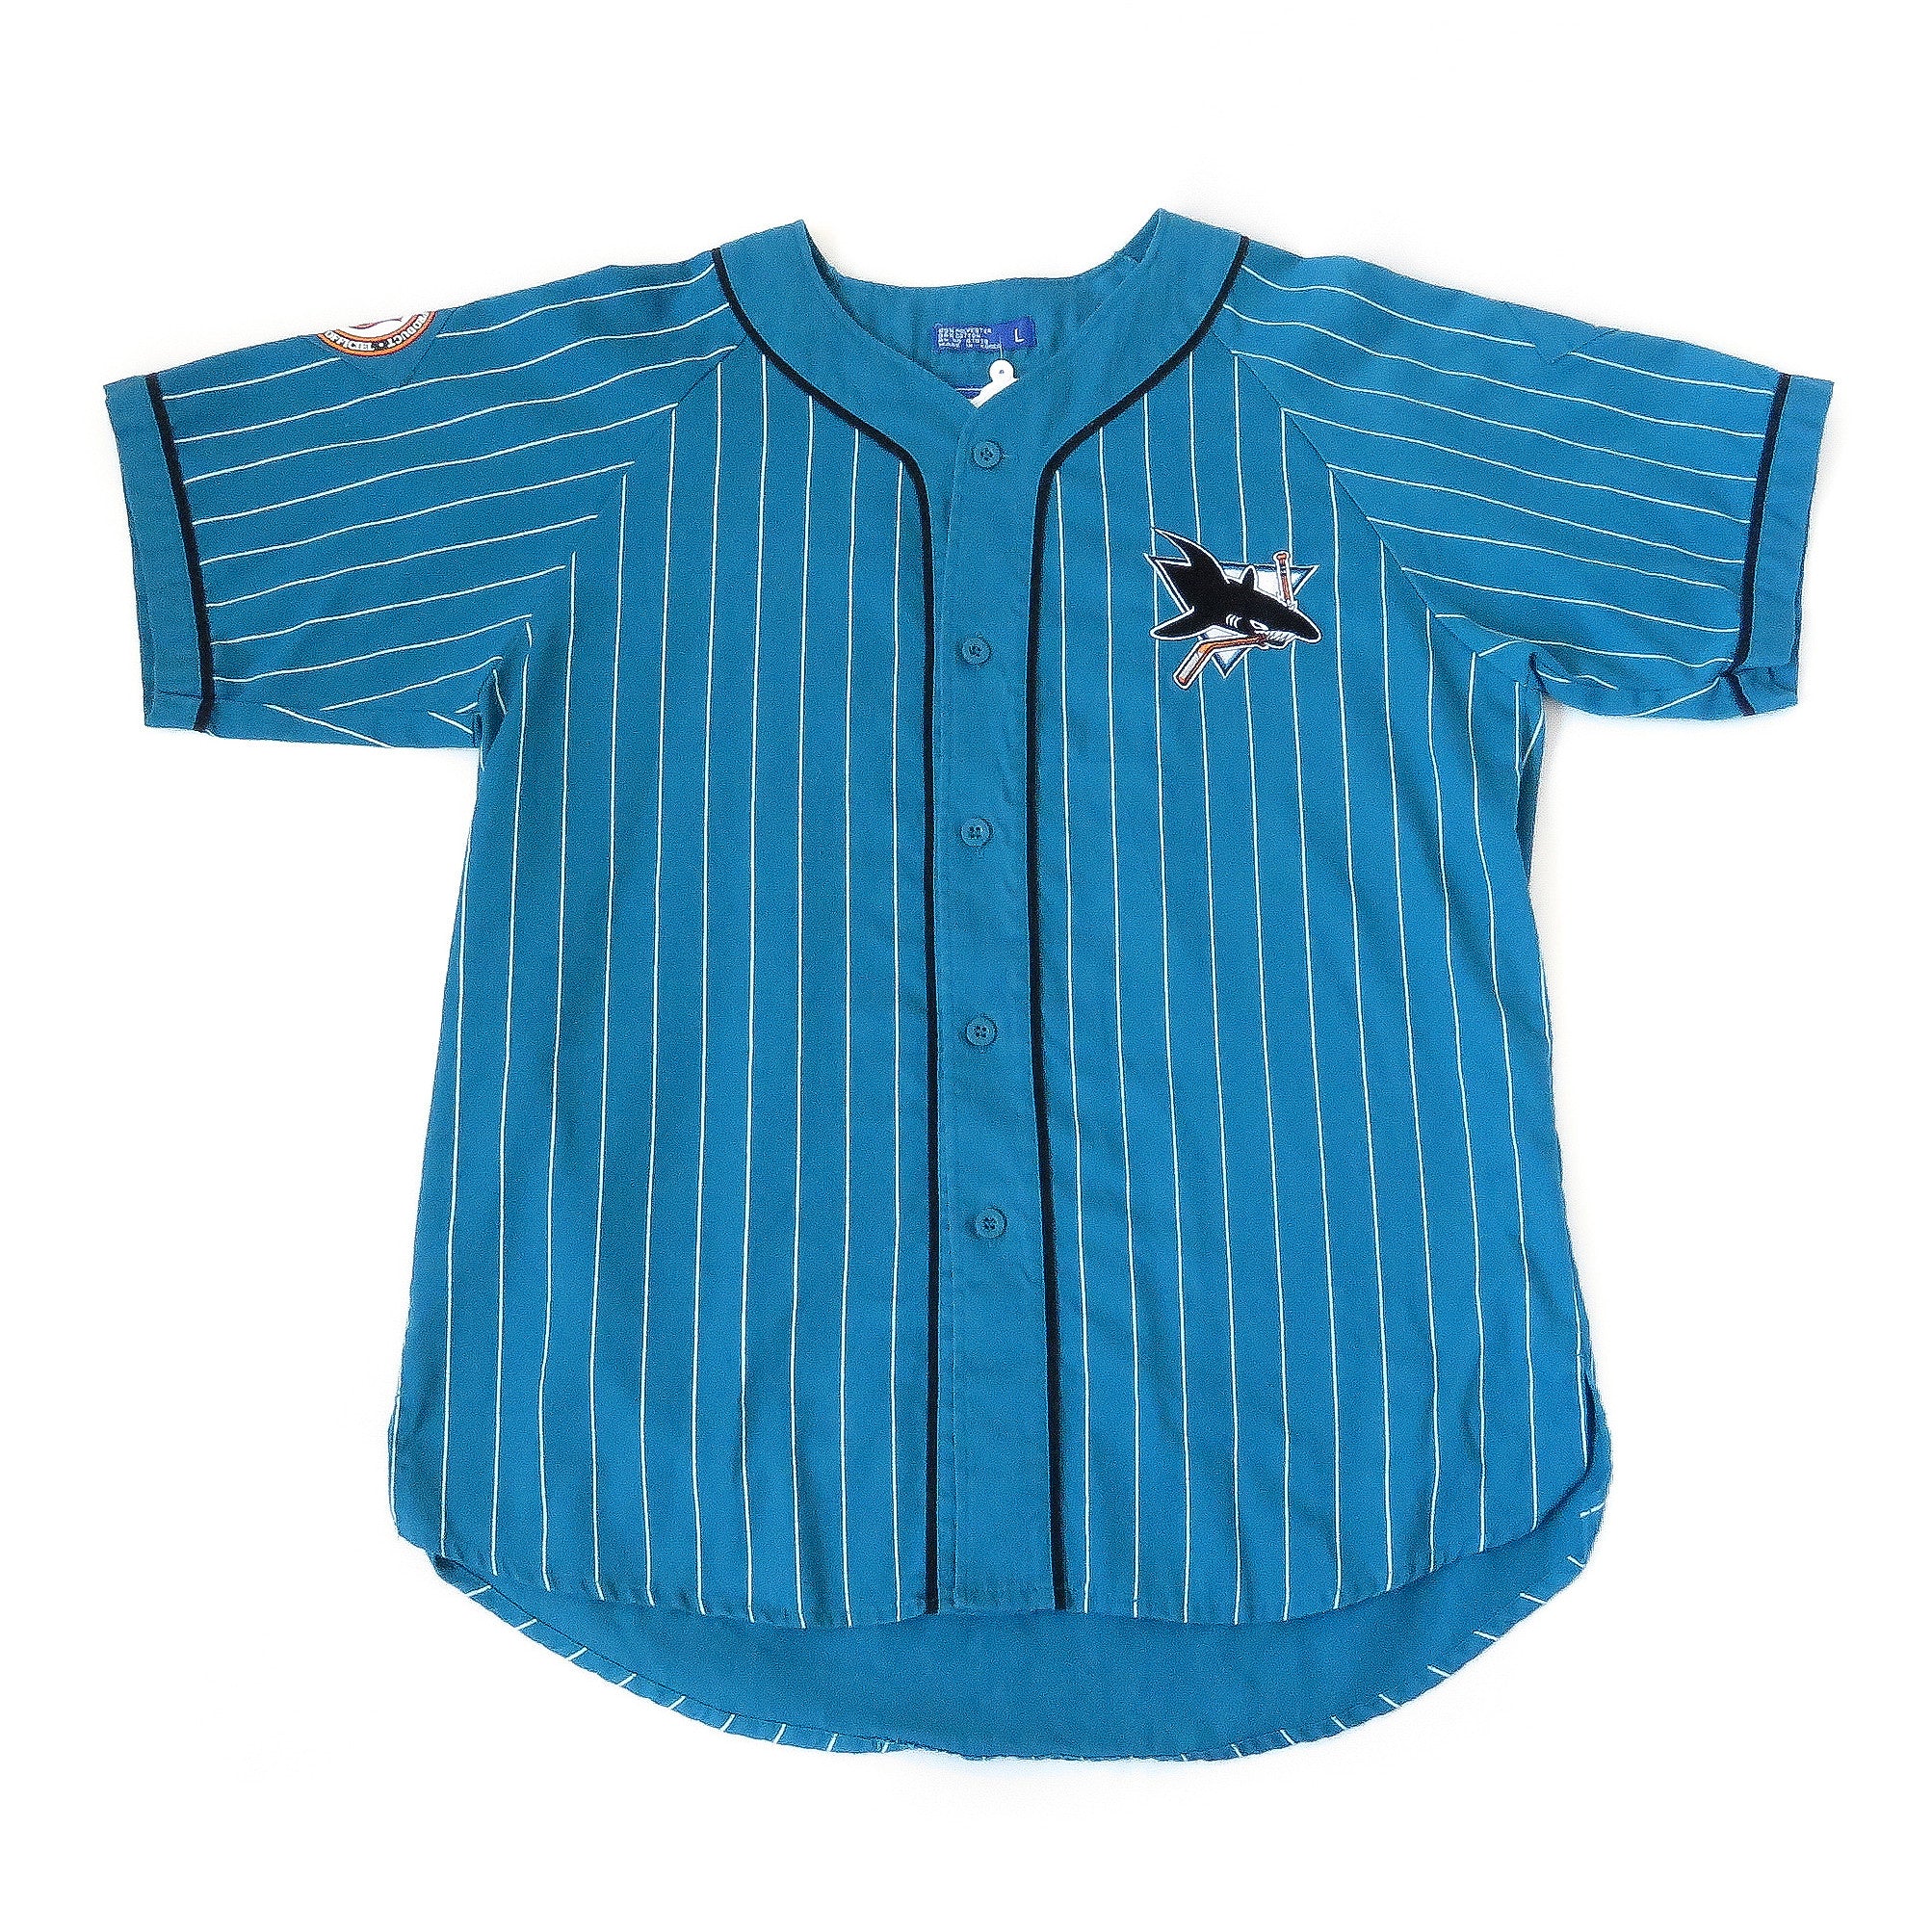 san jose sharks baseball jersey